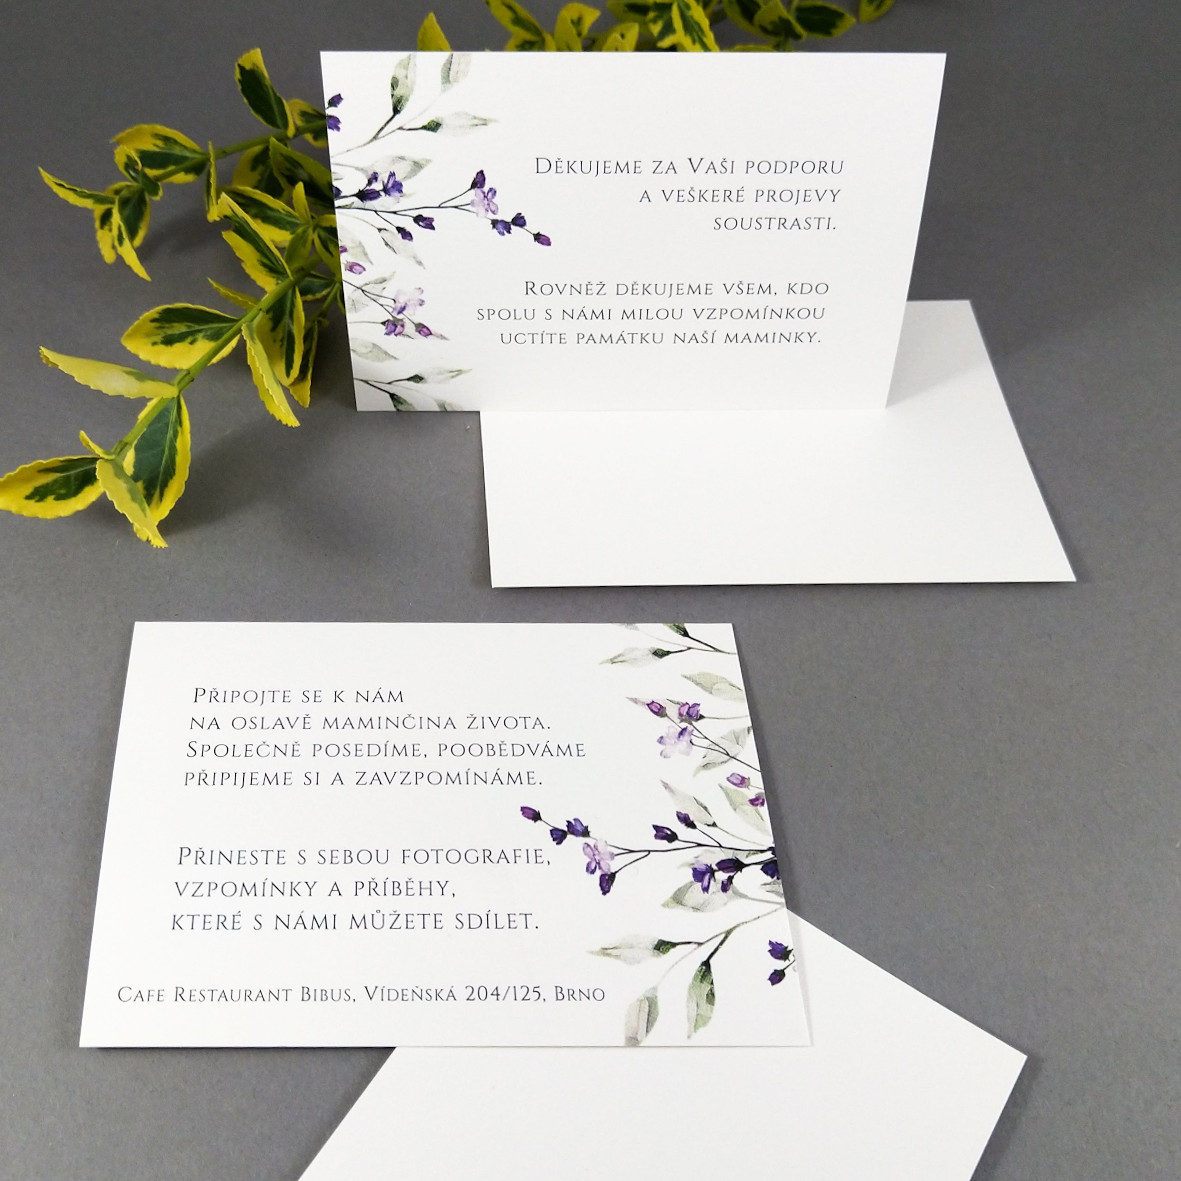 Pozvánka, informační karta – s motivem větvičky a drobných fialových květů, formát 100 × 70 mm, jednostranná